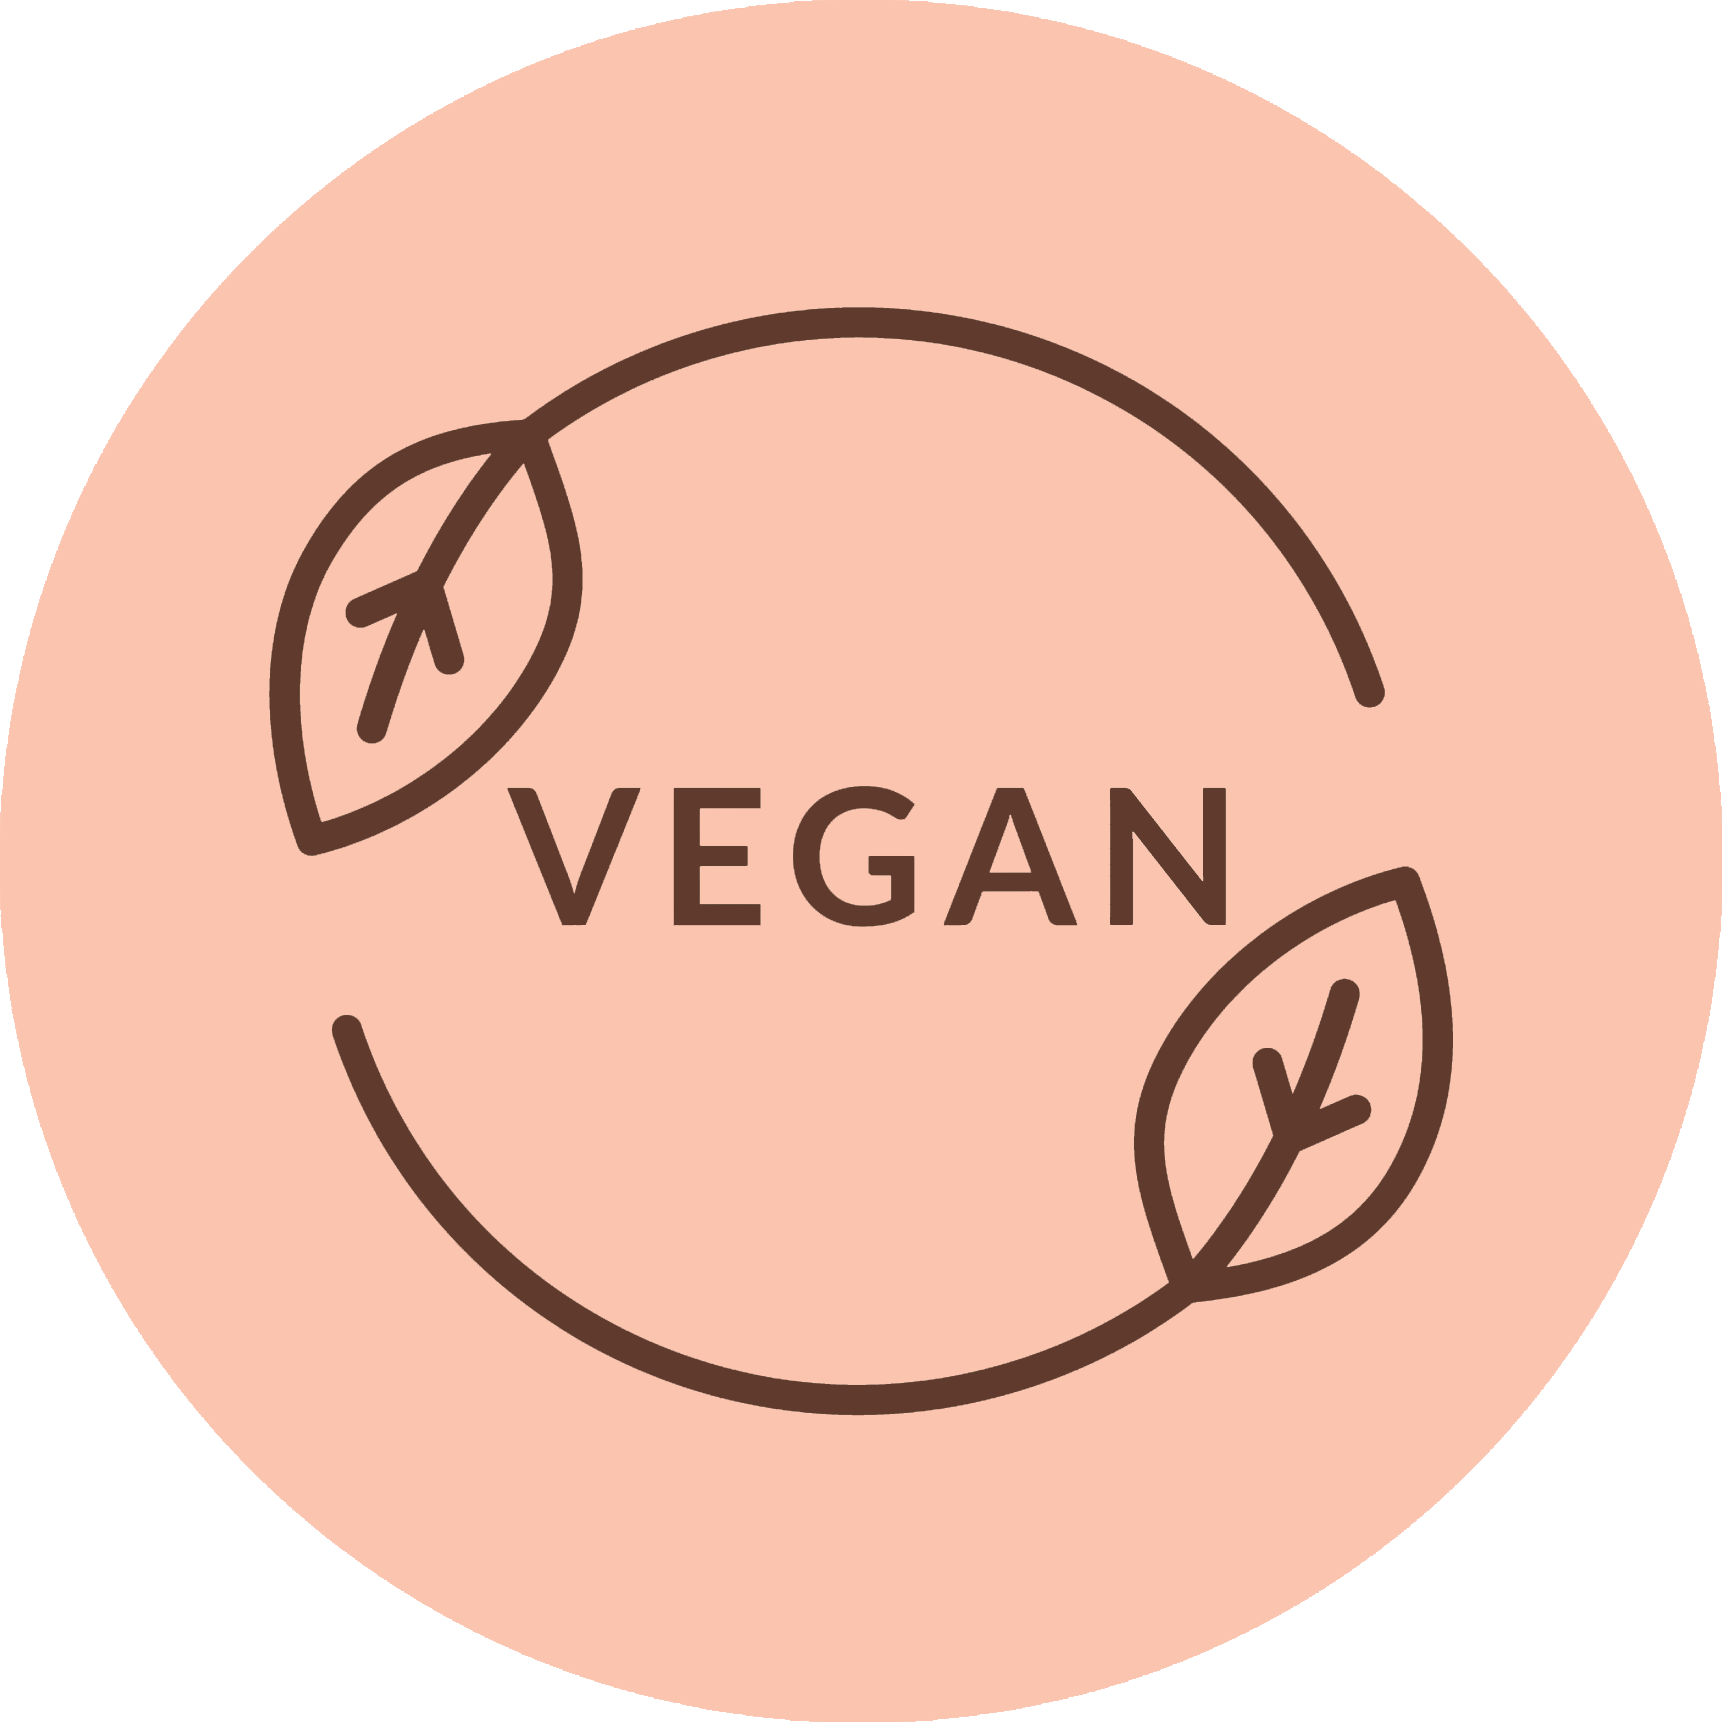 Vegan logo with a leaf icon